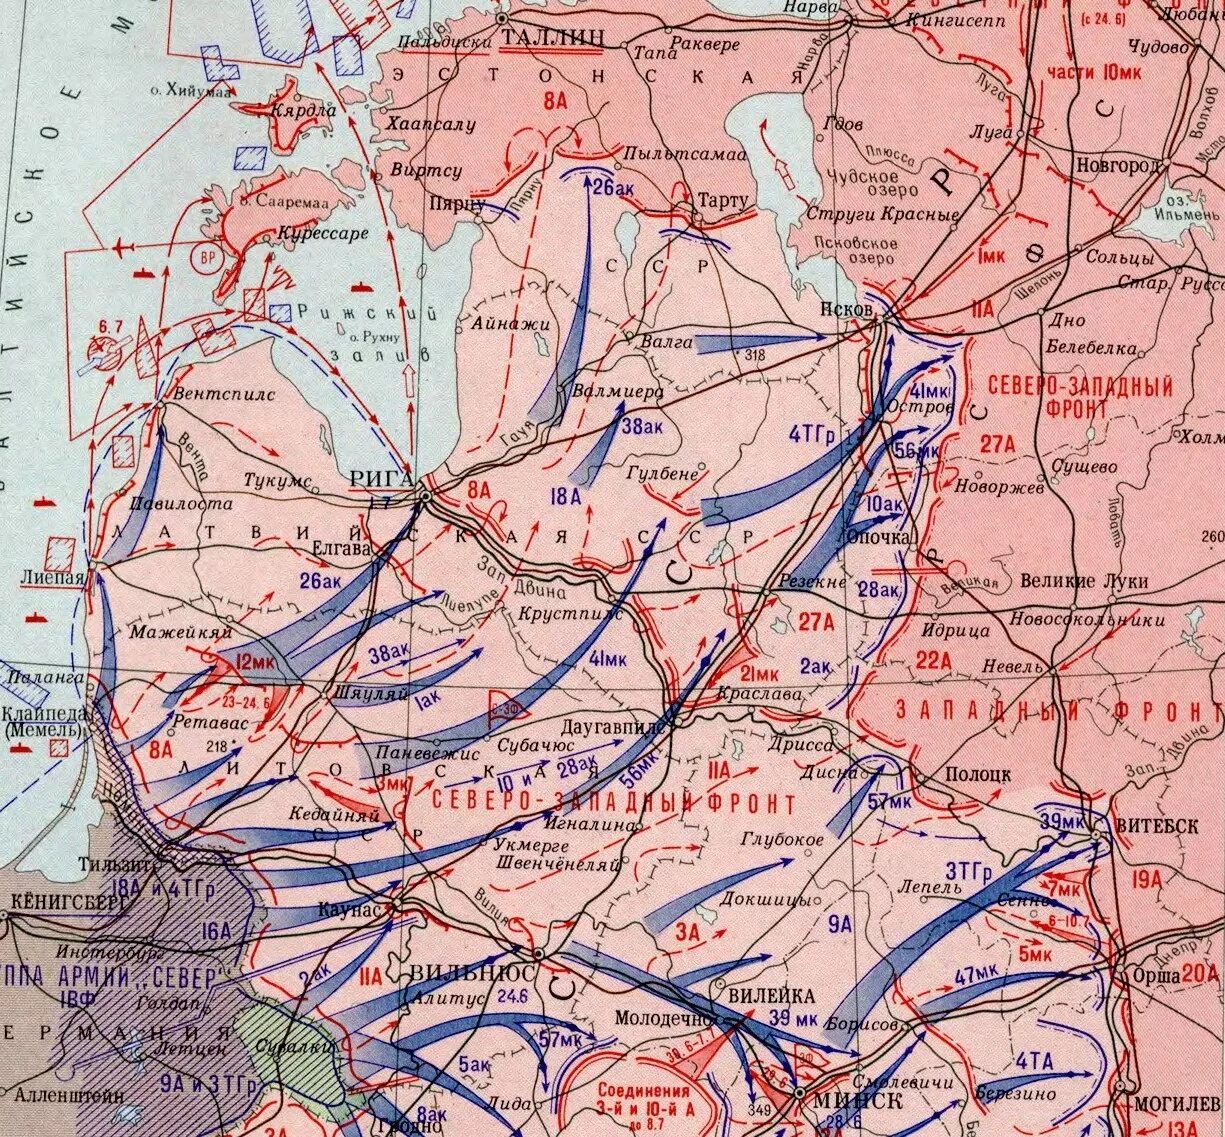 Прибалтийская Военная операция 22 июня 9 июля 1941. Северо-Западный фронт 1941 карты. Оборона Прибалтики 1941 карта. Прибалтийская стратегическая оборонительная операция 1941 карта.